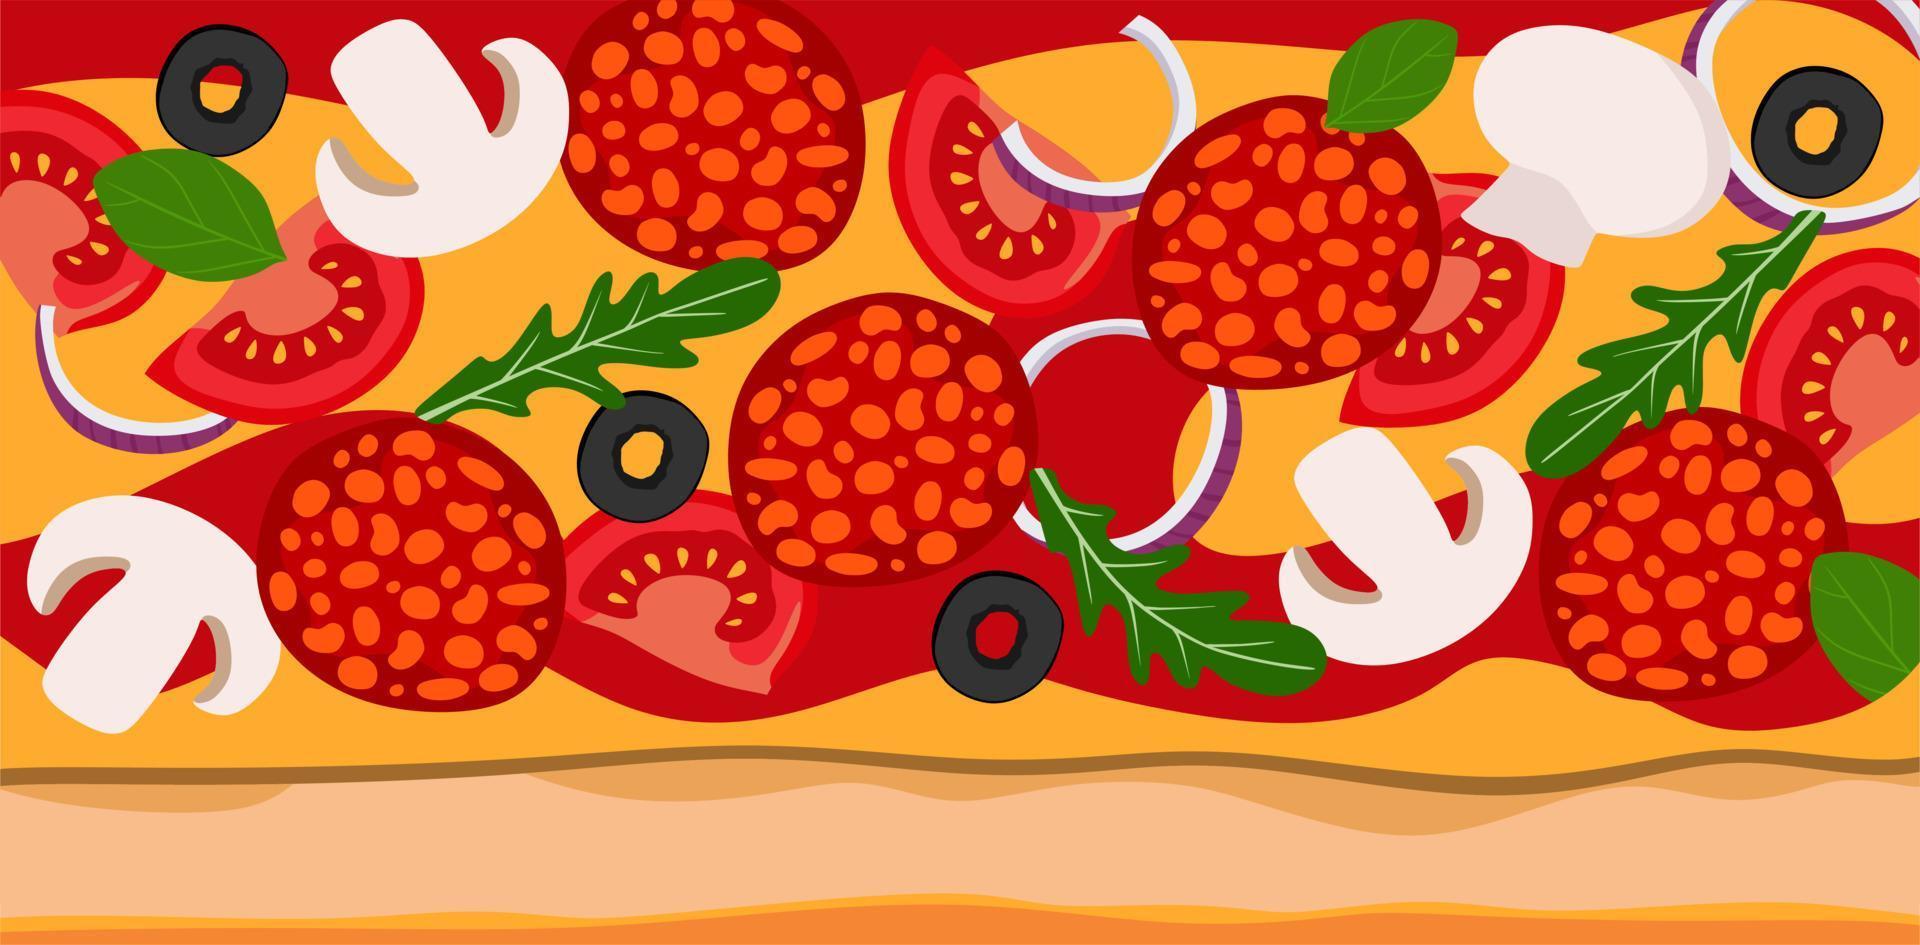 achtergrondpizza met salamiuien, tomaten en olijven. vectorillustratie. een concept voor stickers, posters, ansichtkaarten, websites en mobiele applicaties. vector